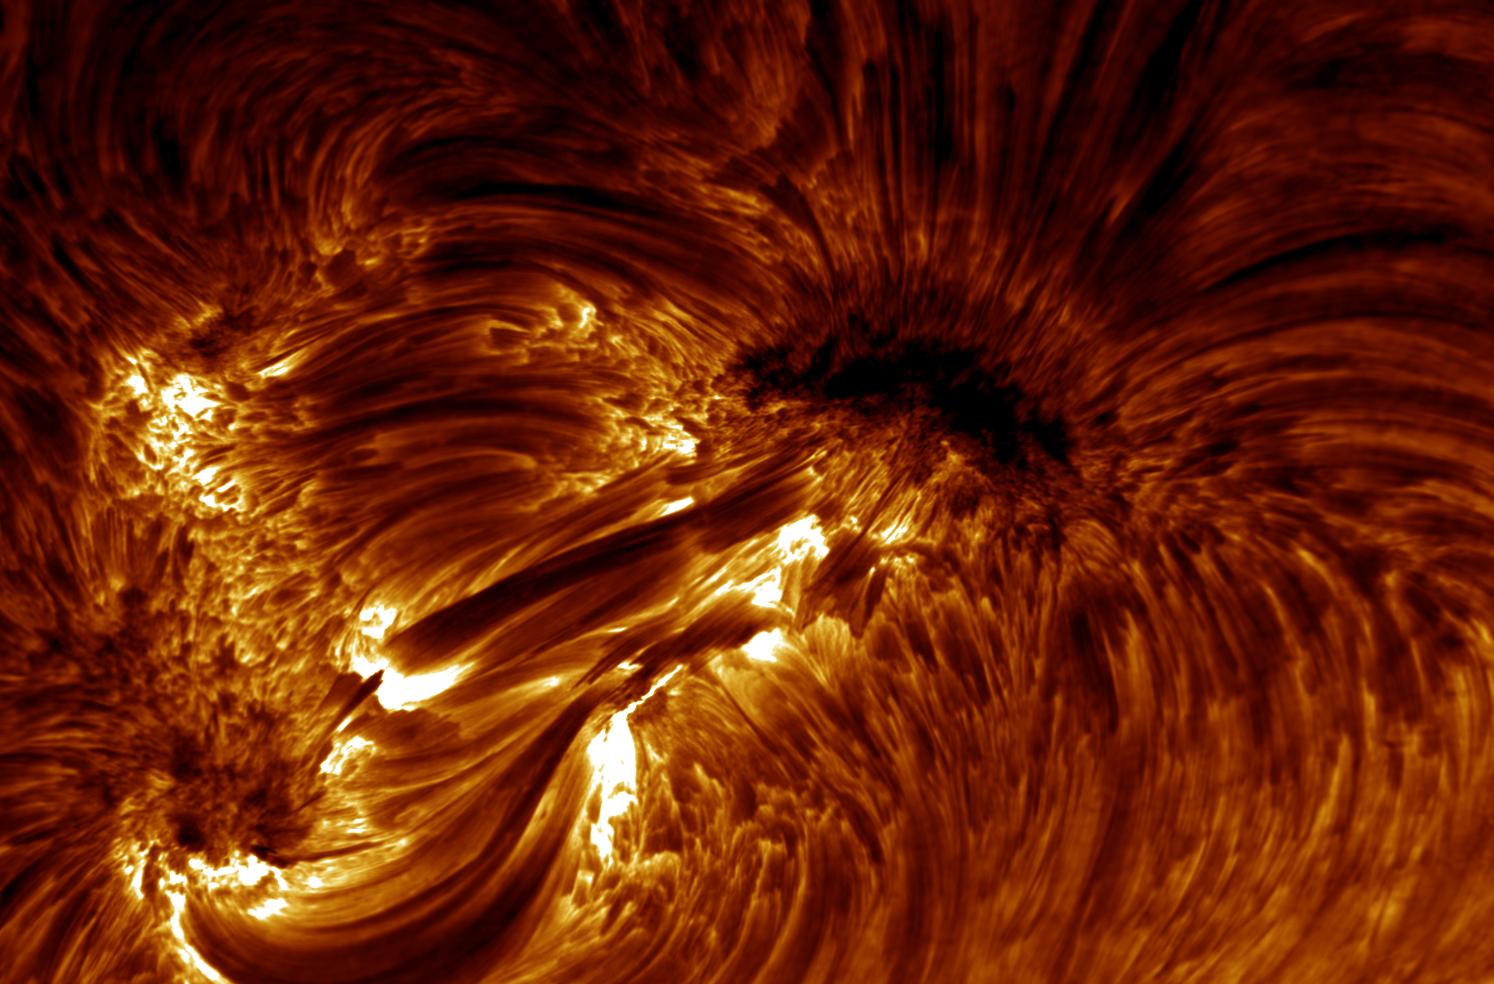 Scienza. La grande macchia solare visibile ad occhio nudo